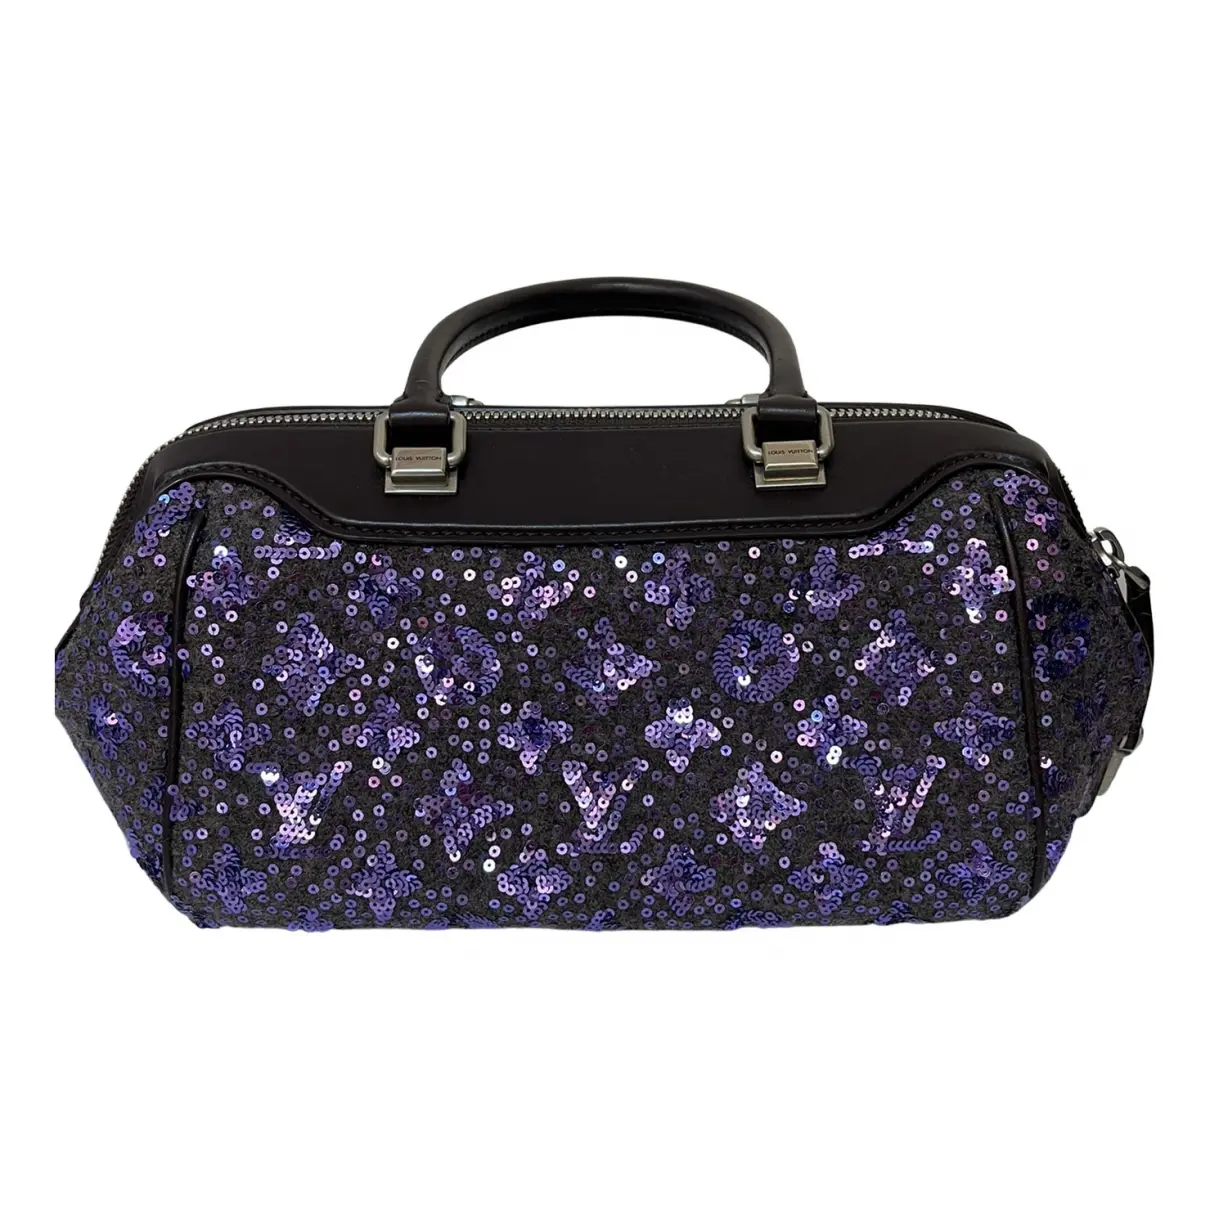 Sunshine Express glitter handbag Louis Vuitton